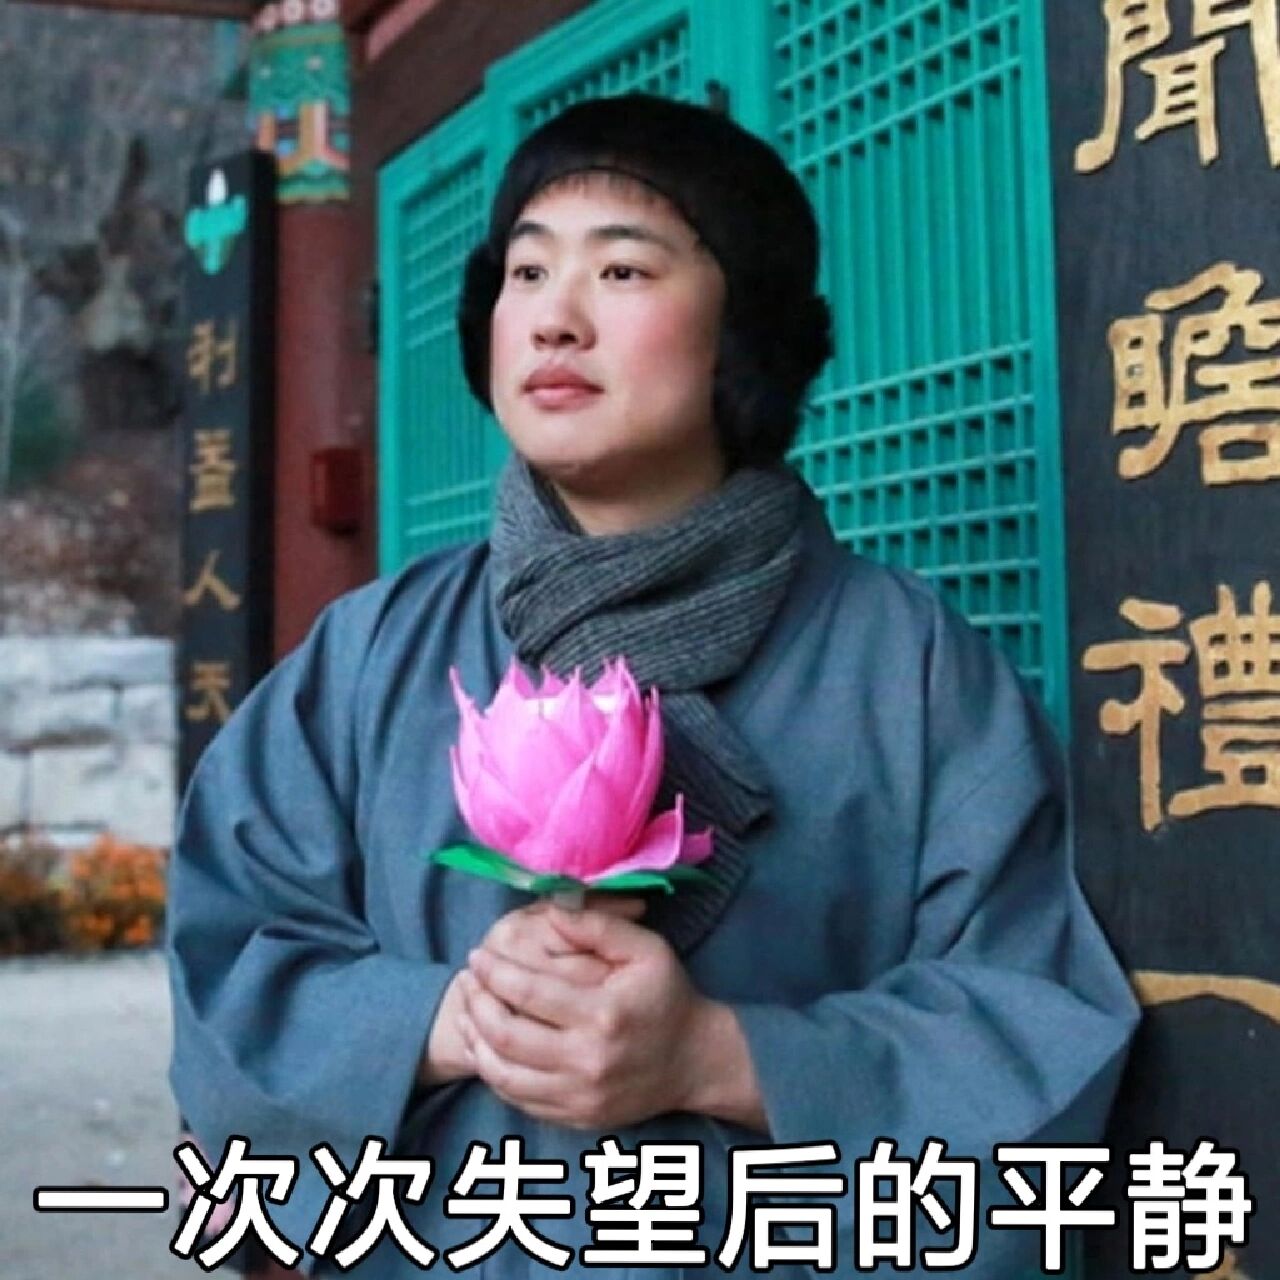 只想上香 原来佛系这个很有名的手捧莲花的表情包出自韩剧《请回答